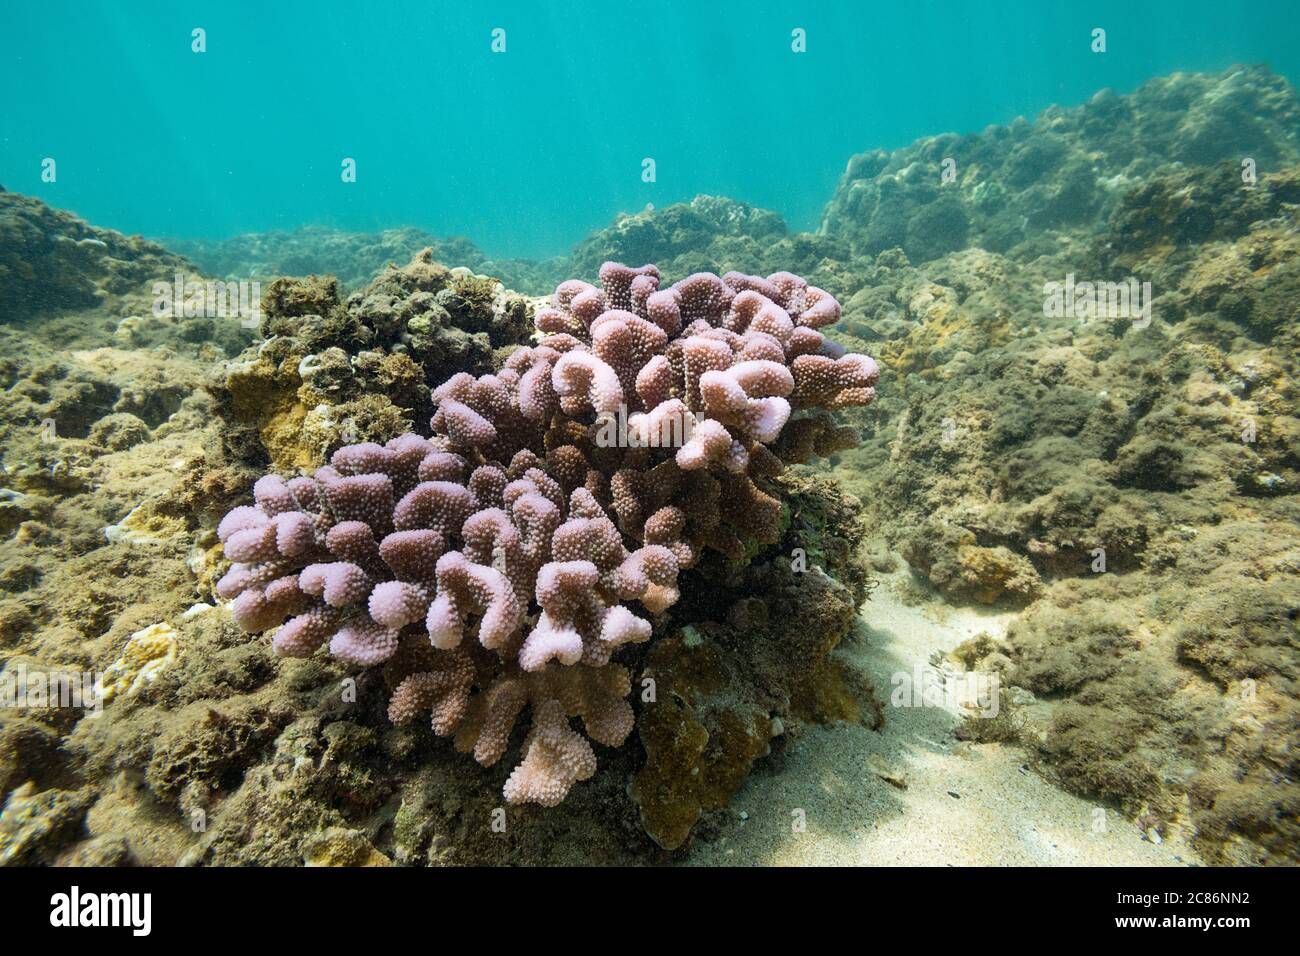 Colonie de blanchissement de corail de chou-fleur, Pocillopora meandrina, montrant des couleurs fluorescentes protectrices, Homokeana Cove, West Maui, Hawaii, États-Unis Banque D'Images